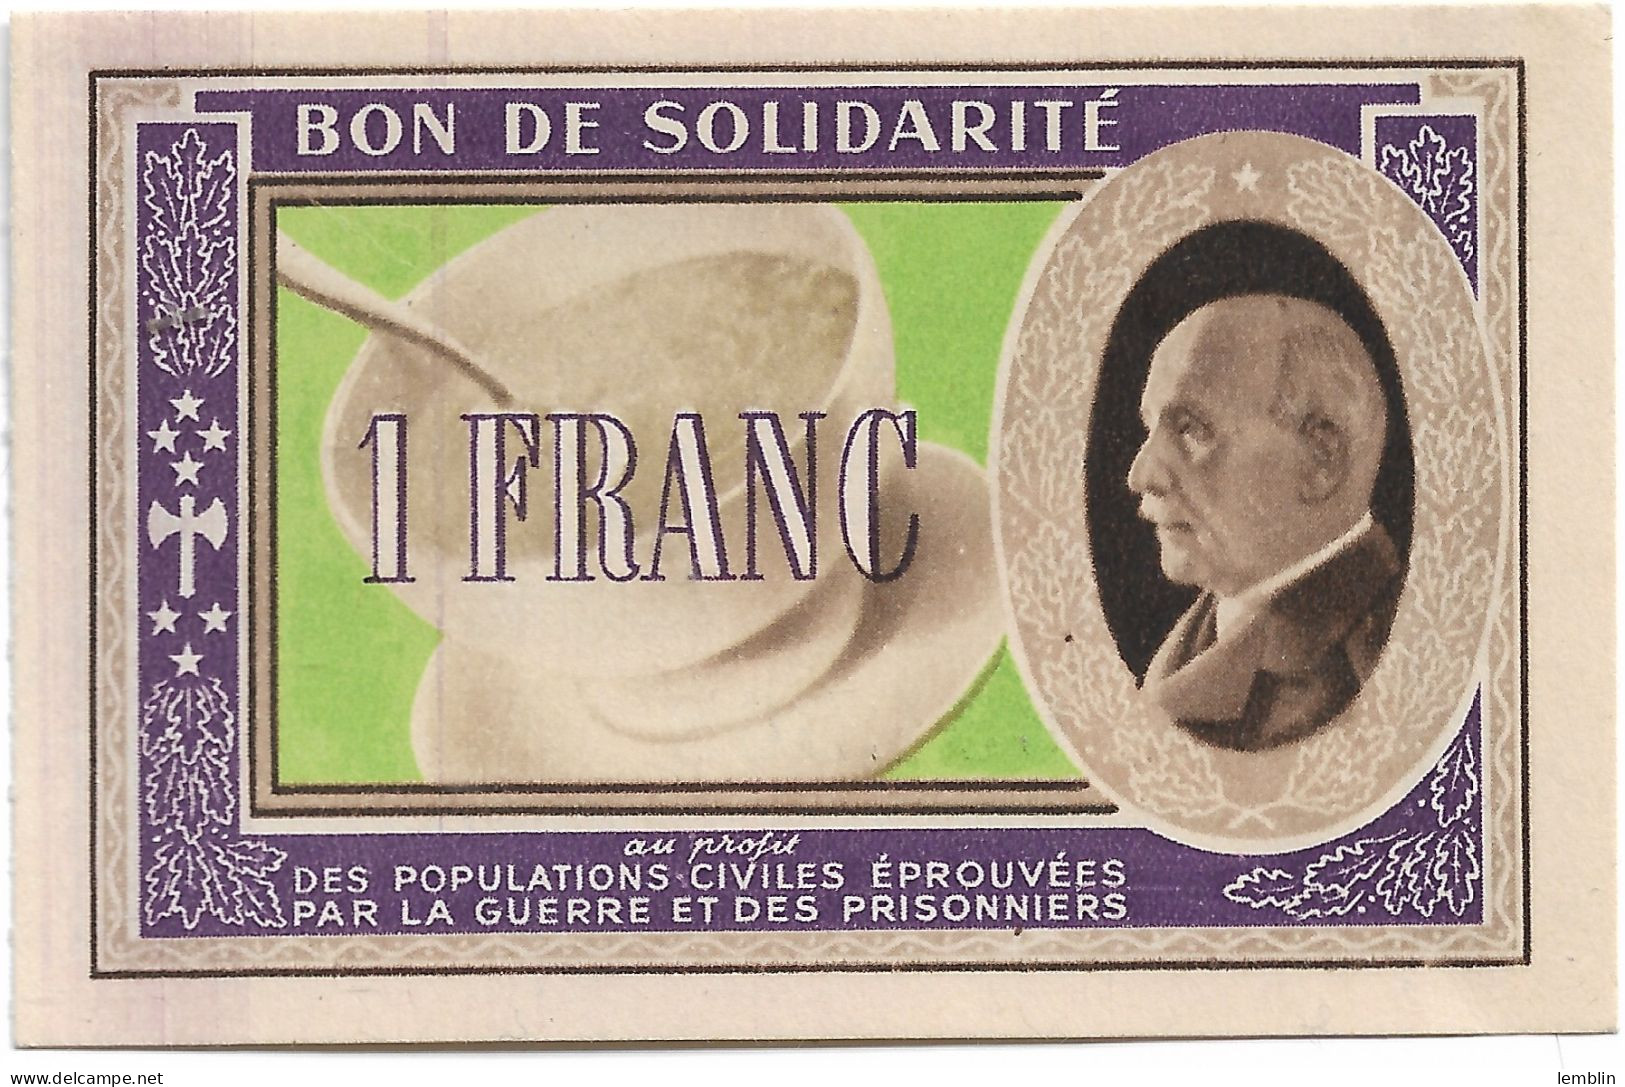 FRANCE - BON DE SOLIDARITE PETAIN D'UN FRANC - Notgeld